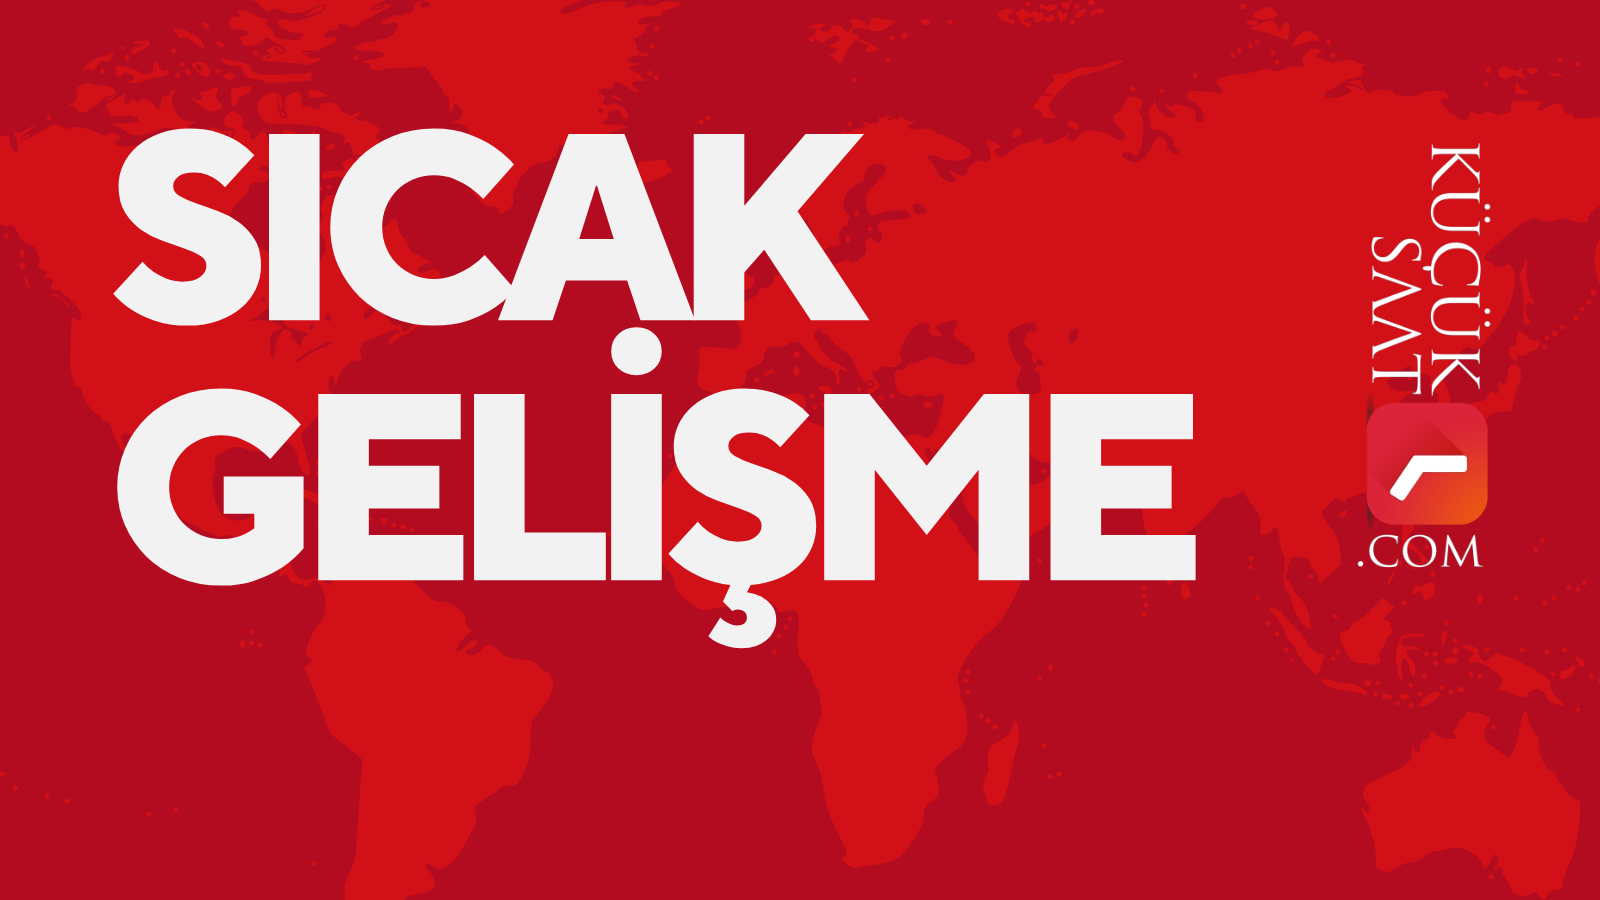 Kim ne kadar oy aldı: AK Parti Adana resmi olmayan temayül sonuçları